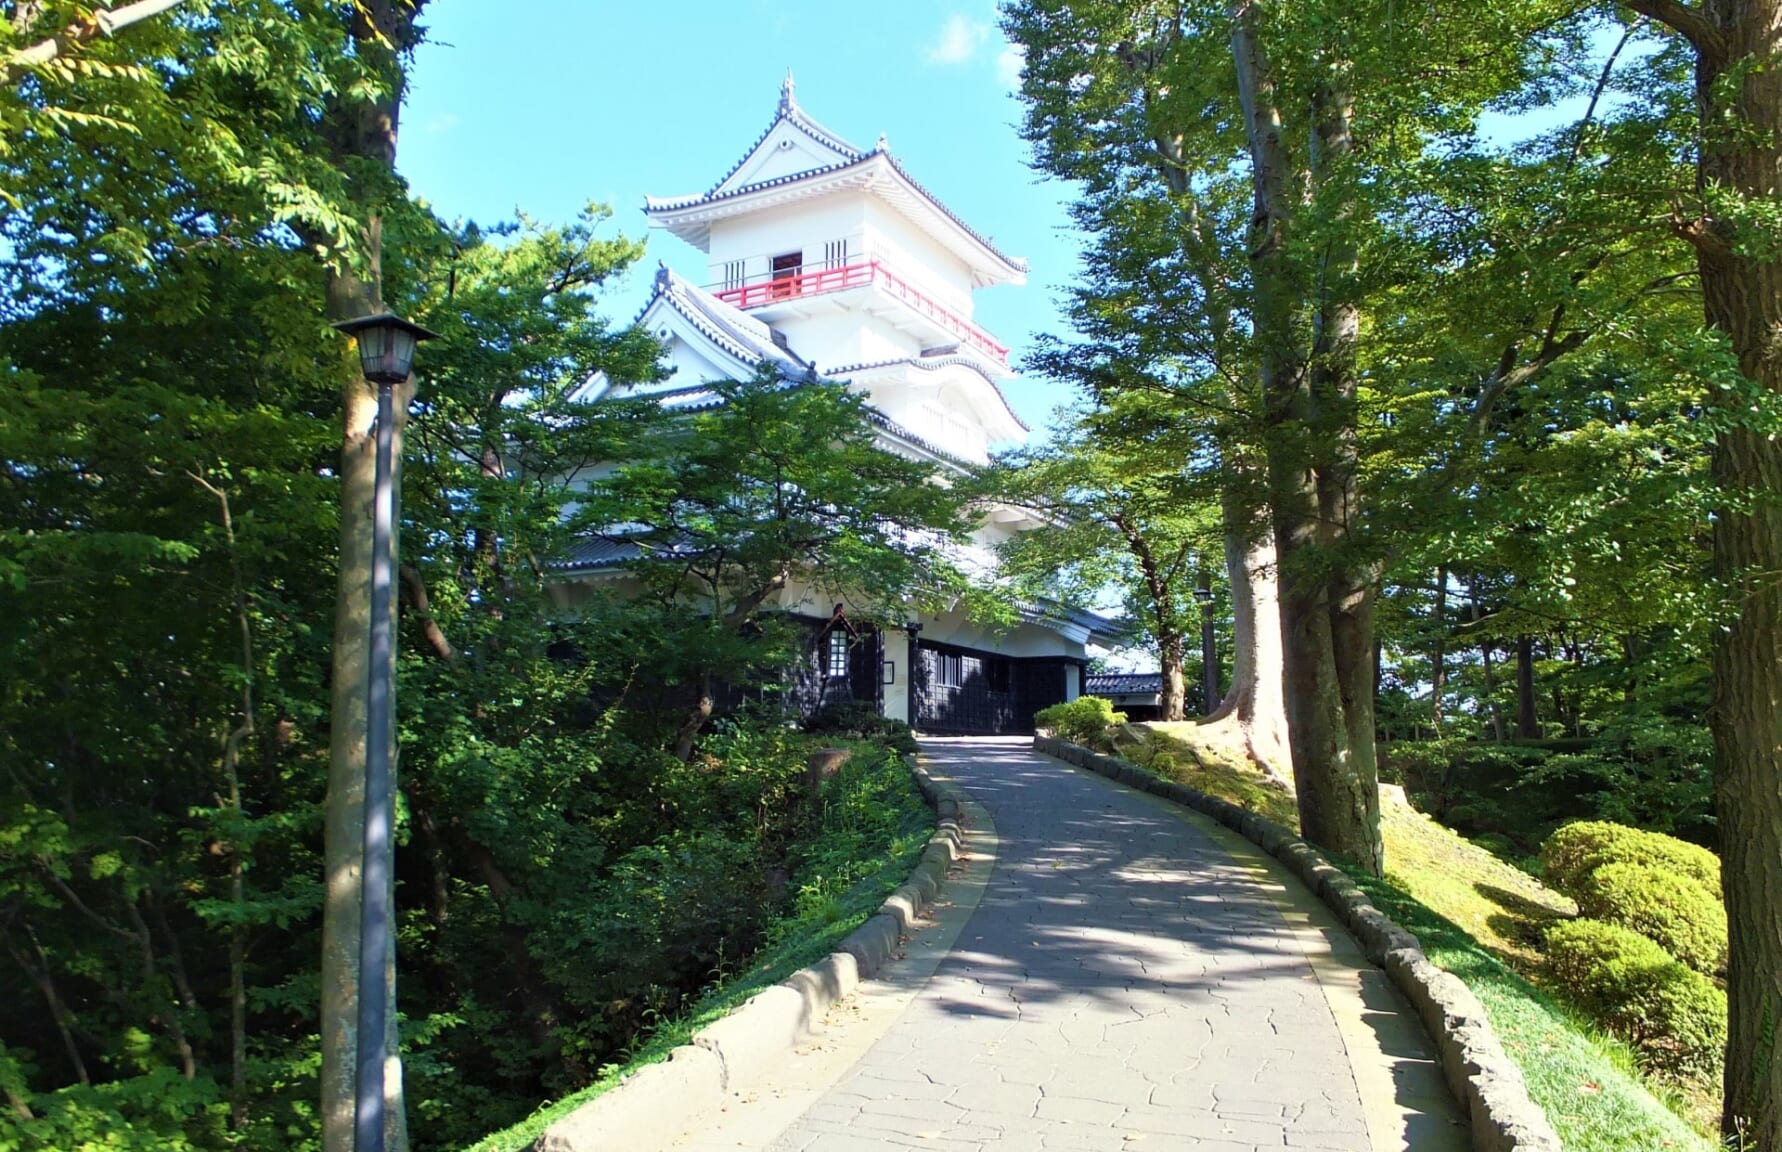 Kubota Castle in Senshu Park